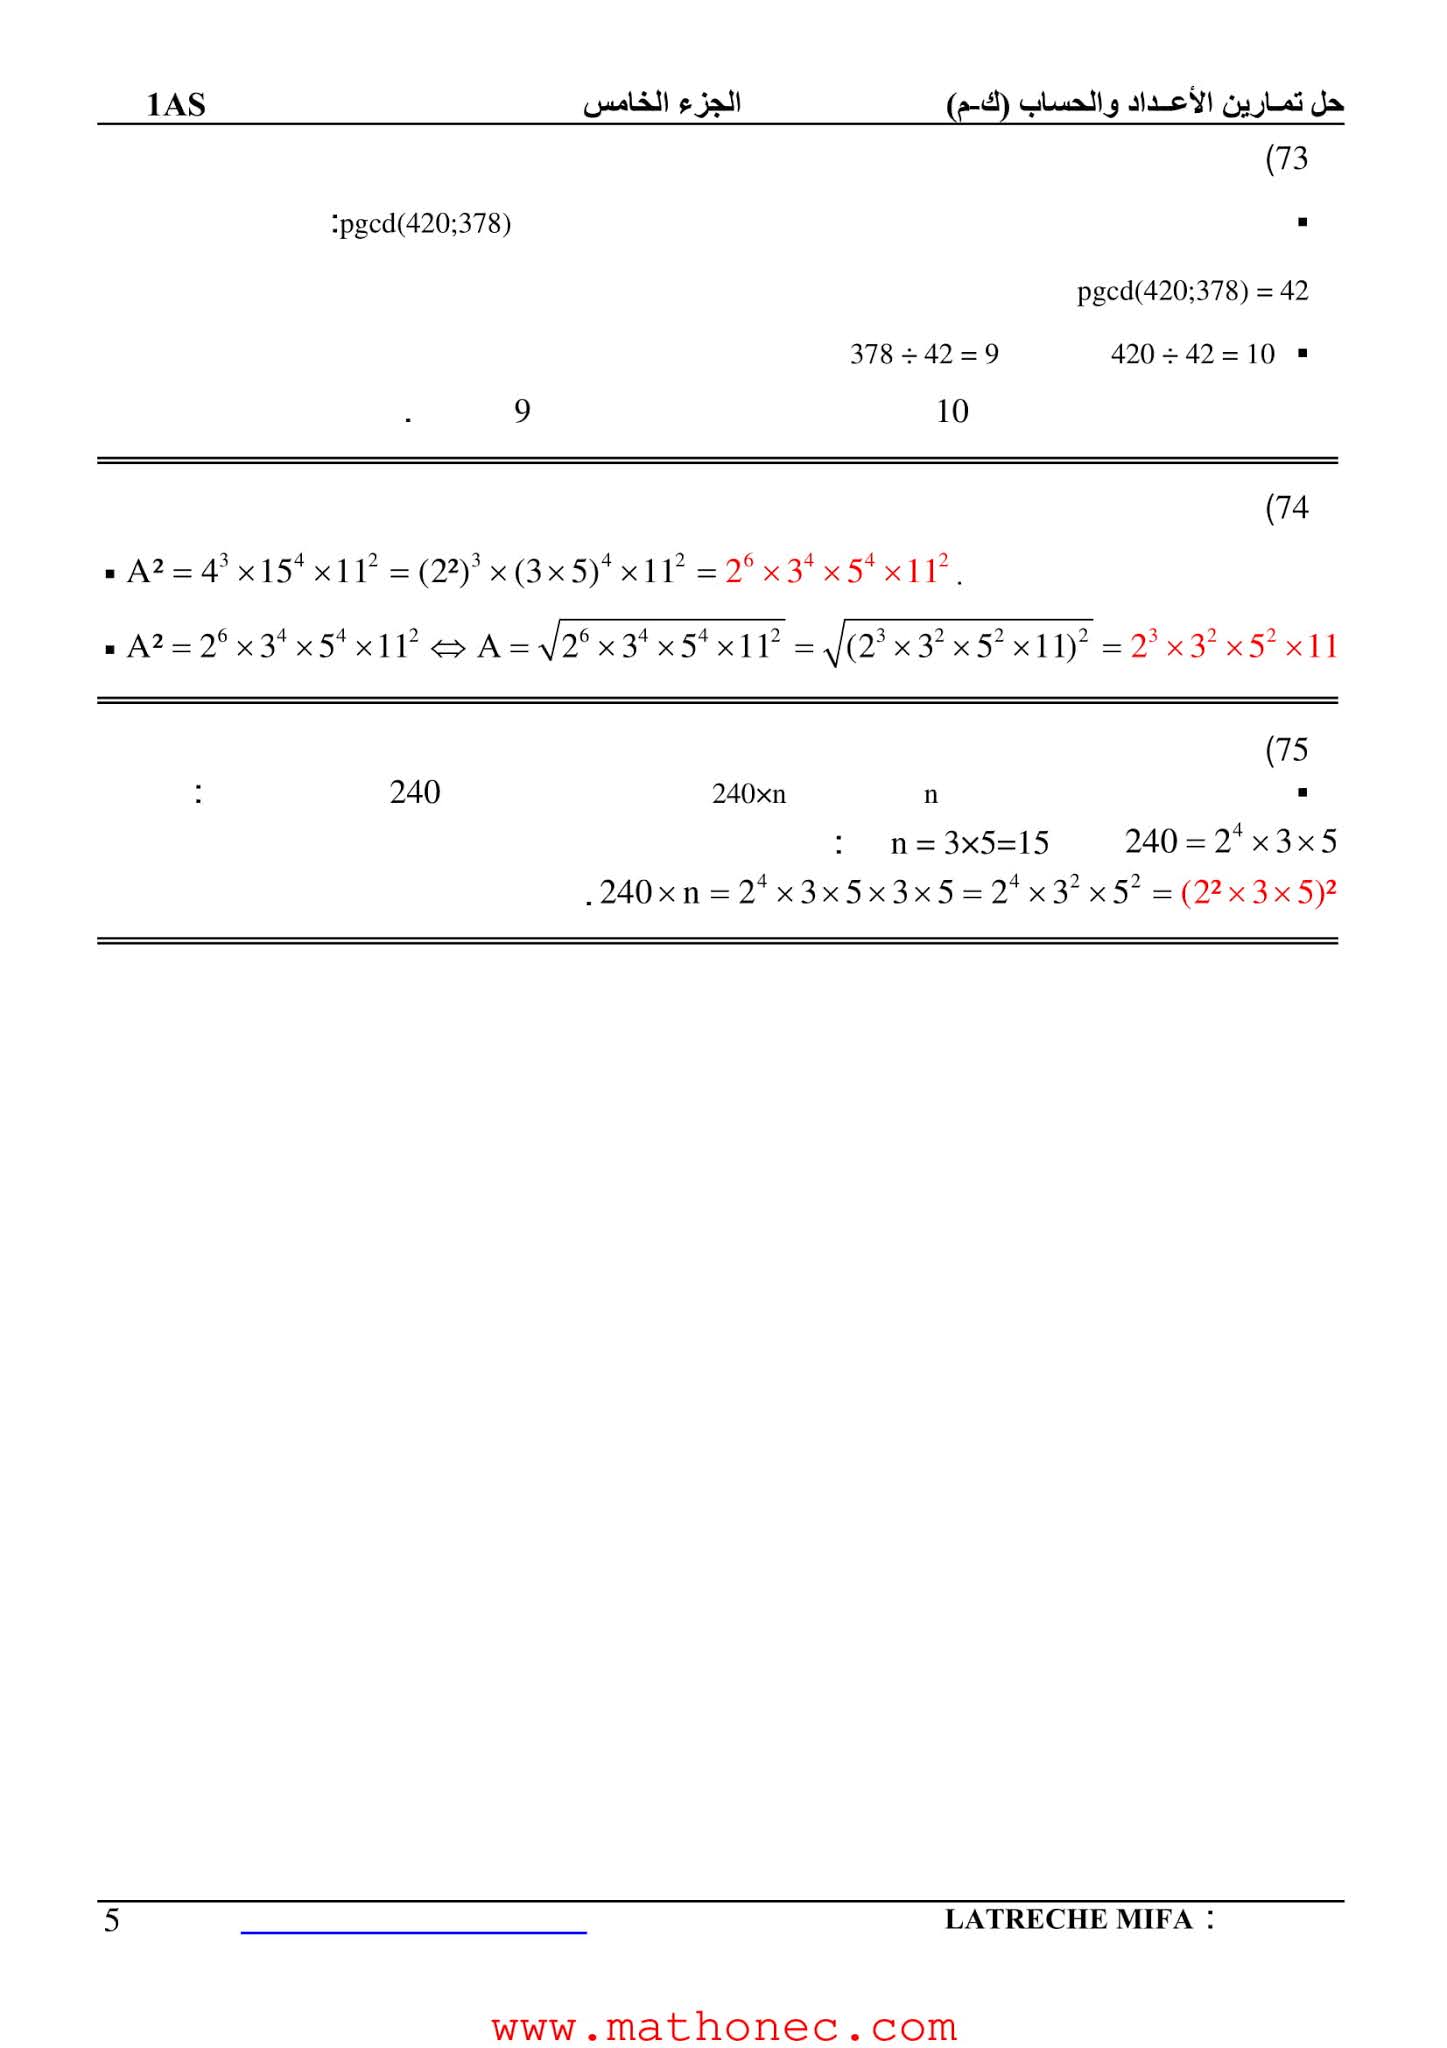 حل تمارين كتاب الرياضيات 1 ثانوي علمي صفحة 22